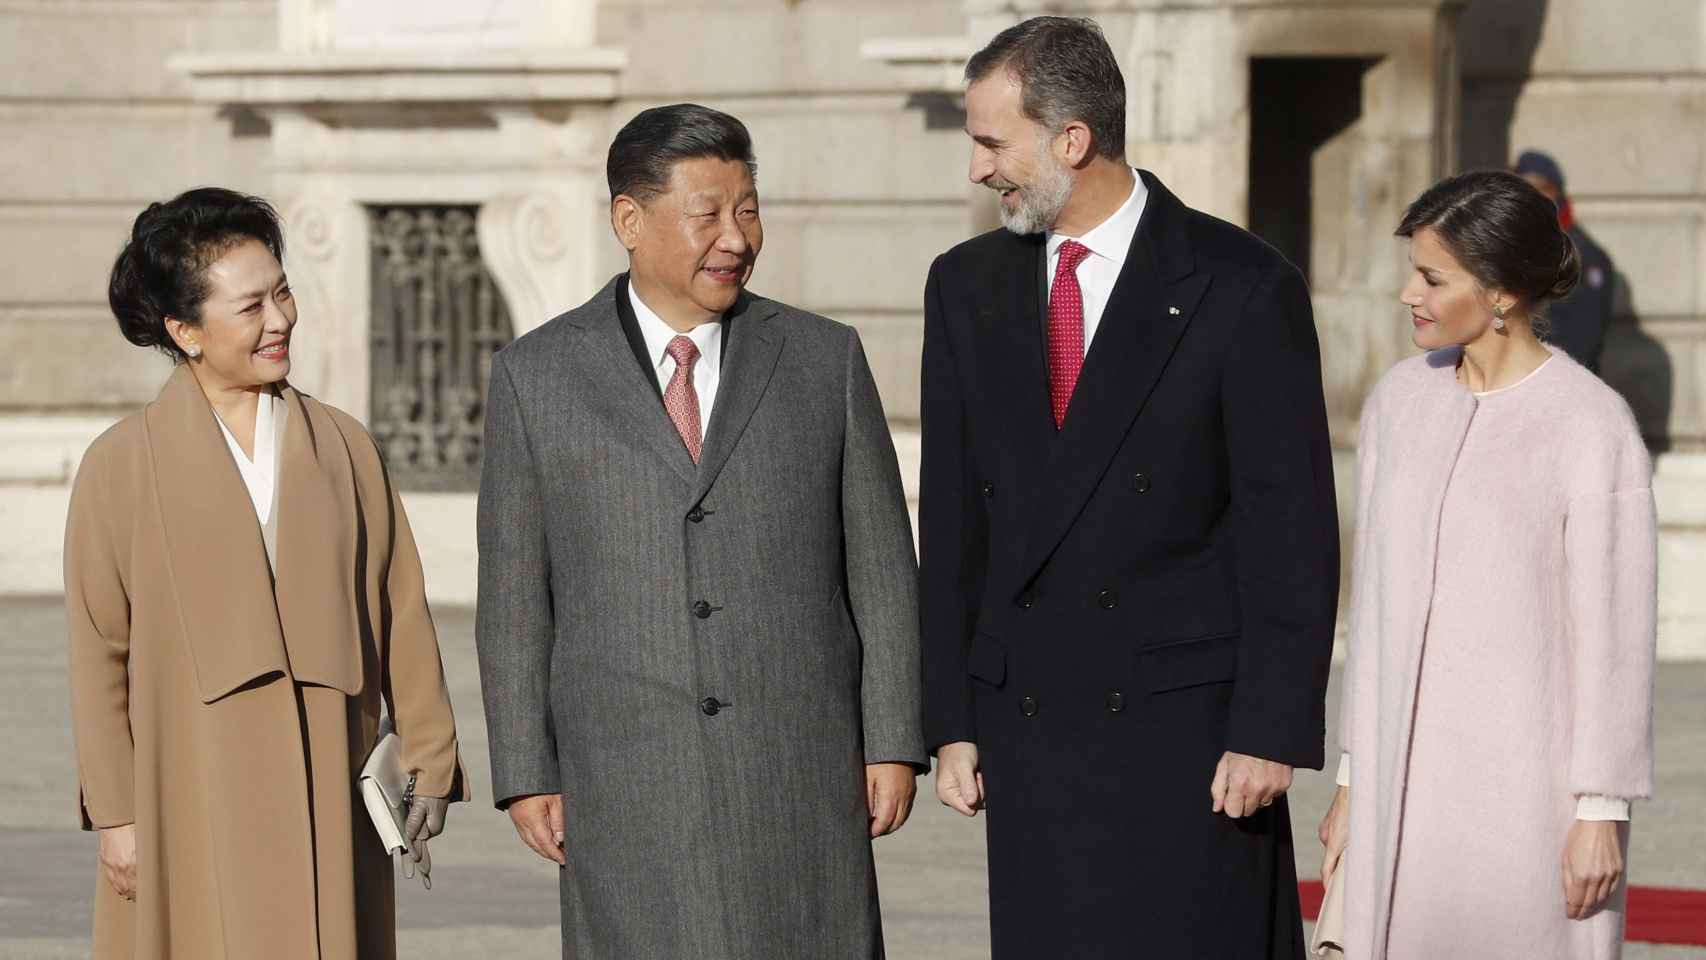 Los Reyes de España, Felipe y Letizia, reciben al presidente de China, Xi Jinping, y su esposa, Peng Liyua